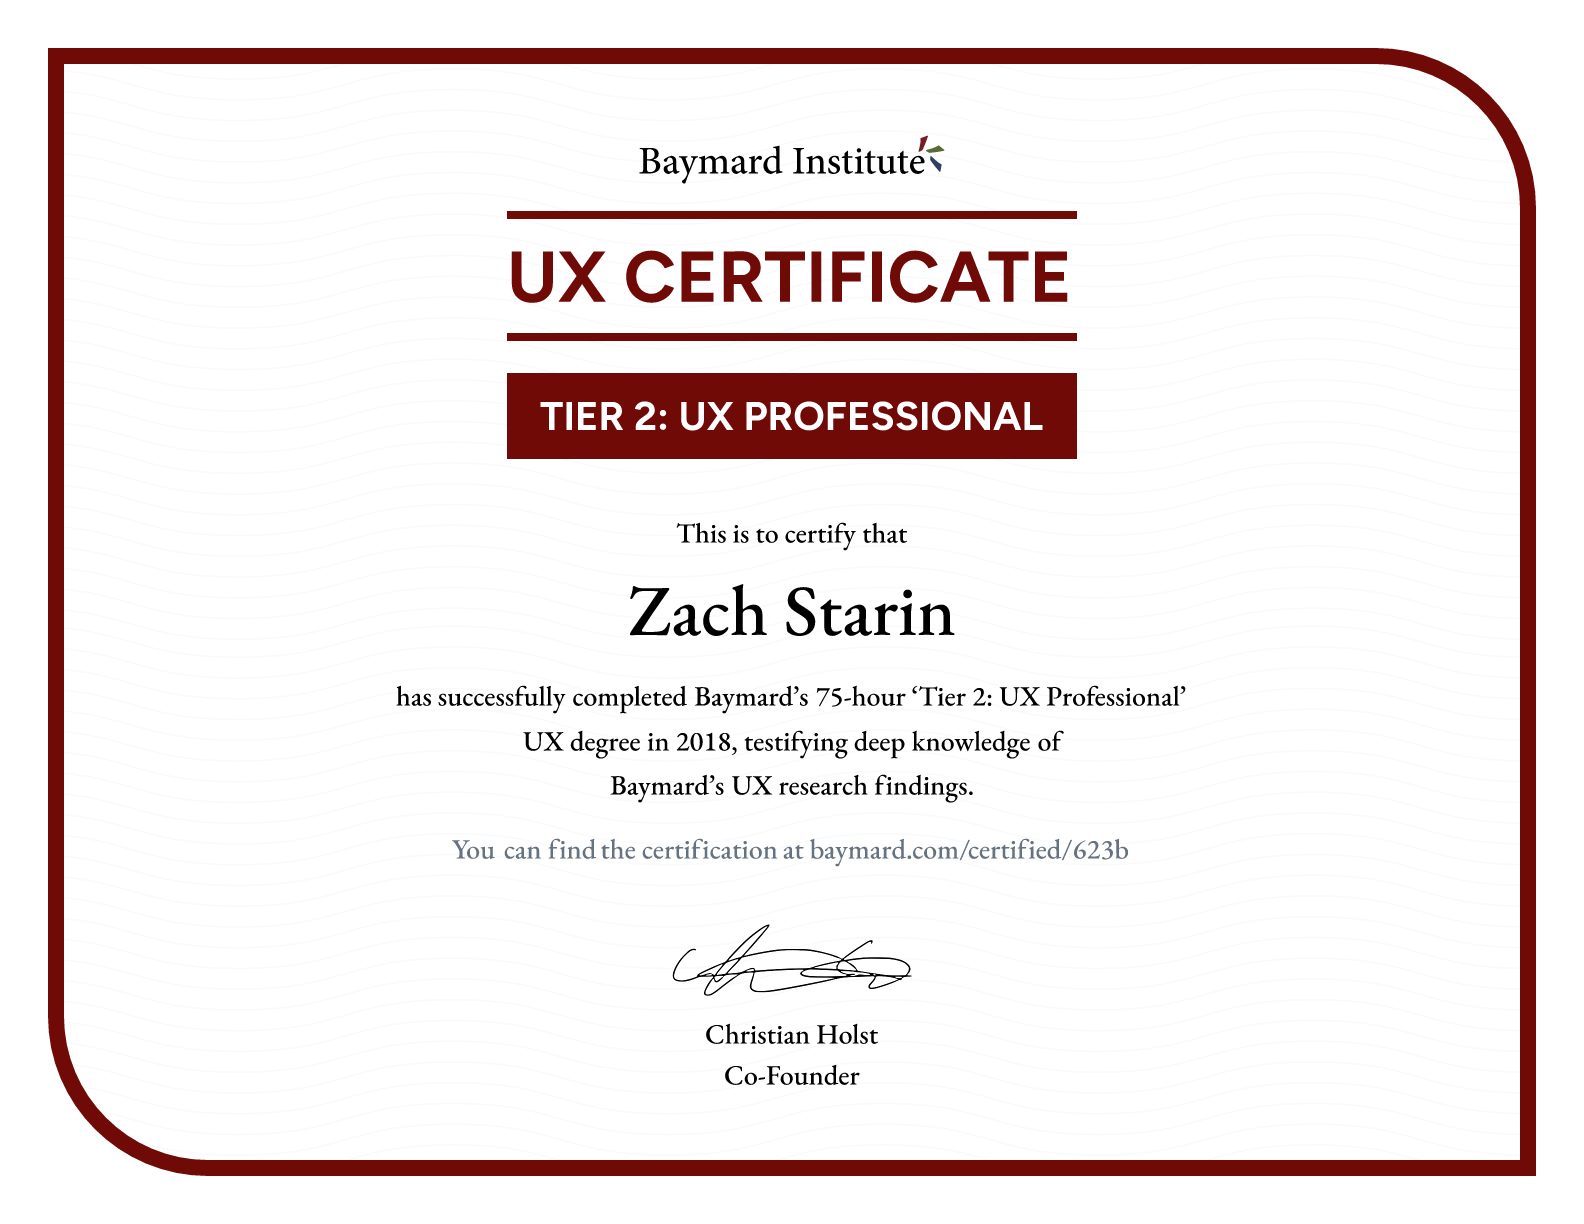 Zach Starin’s certificate